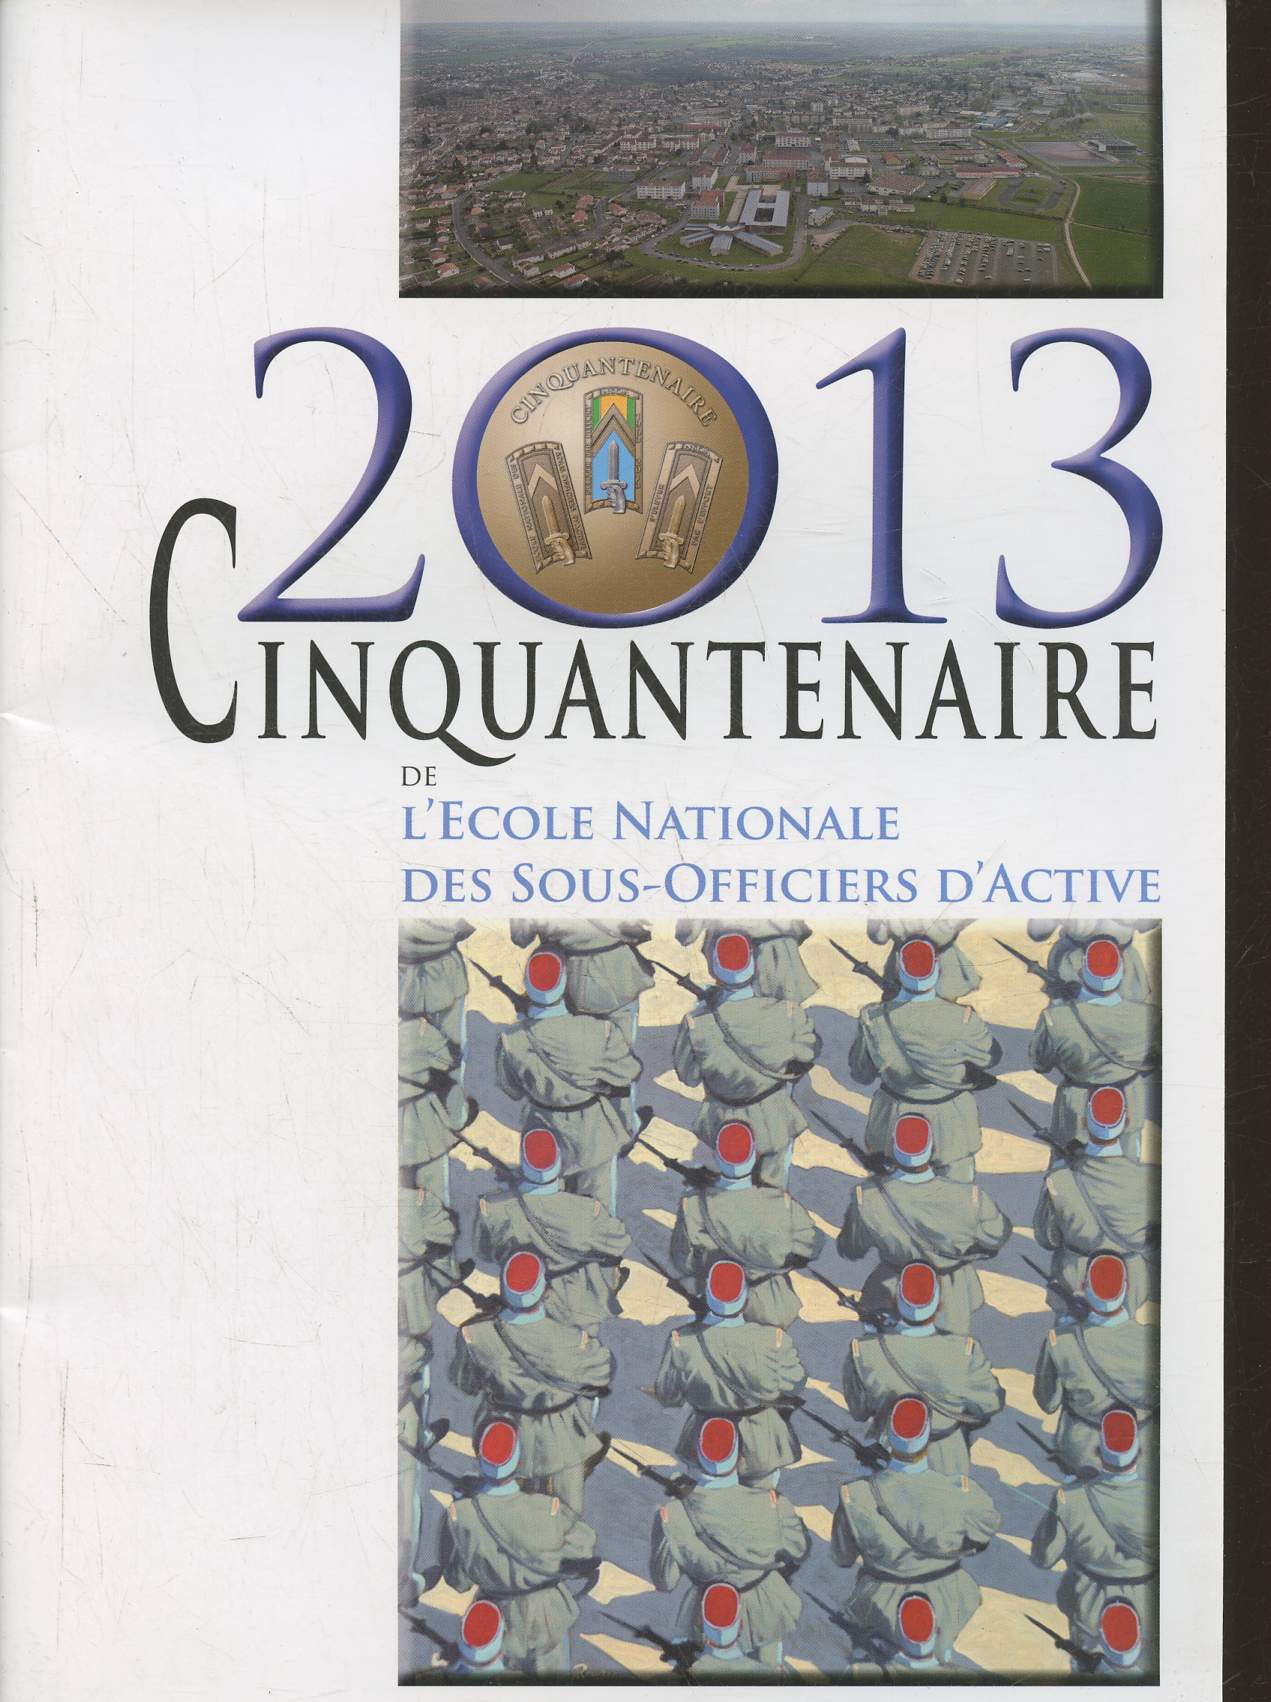 2013- Cinquantenaire de l'Ecole Nationale des Sous-officiers d'active